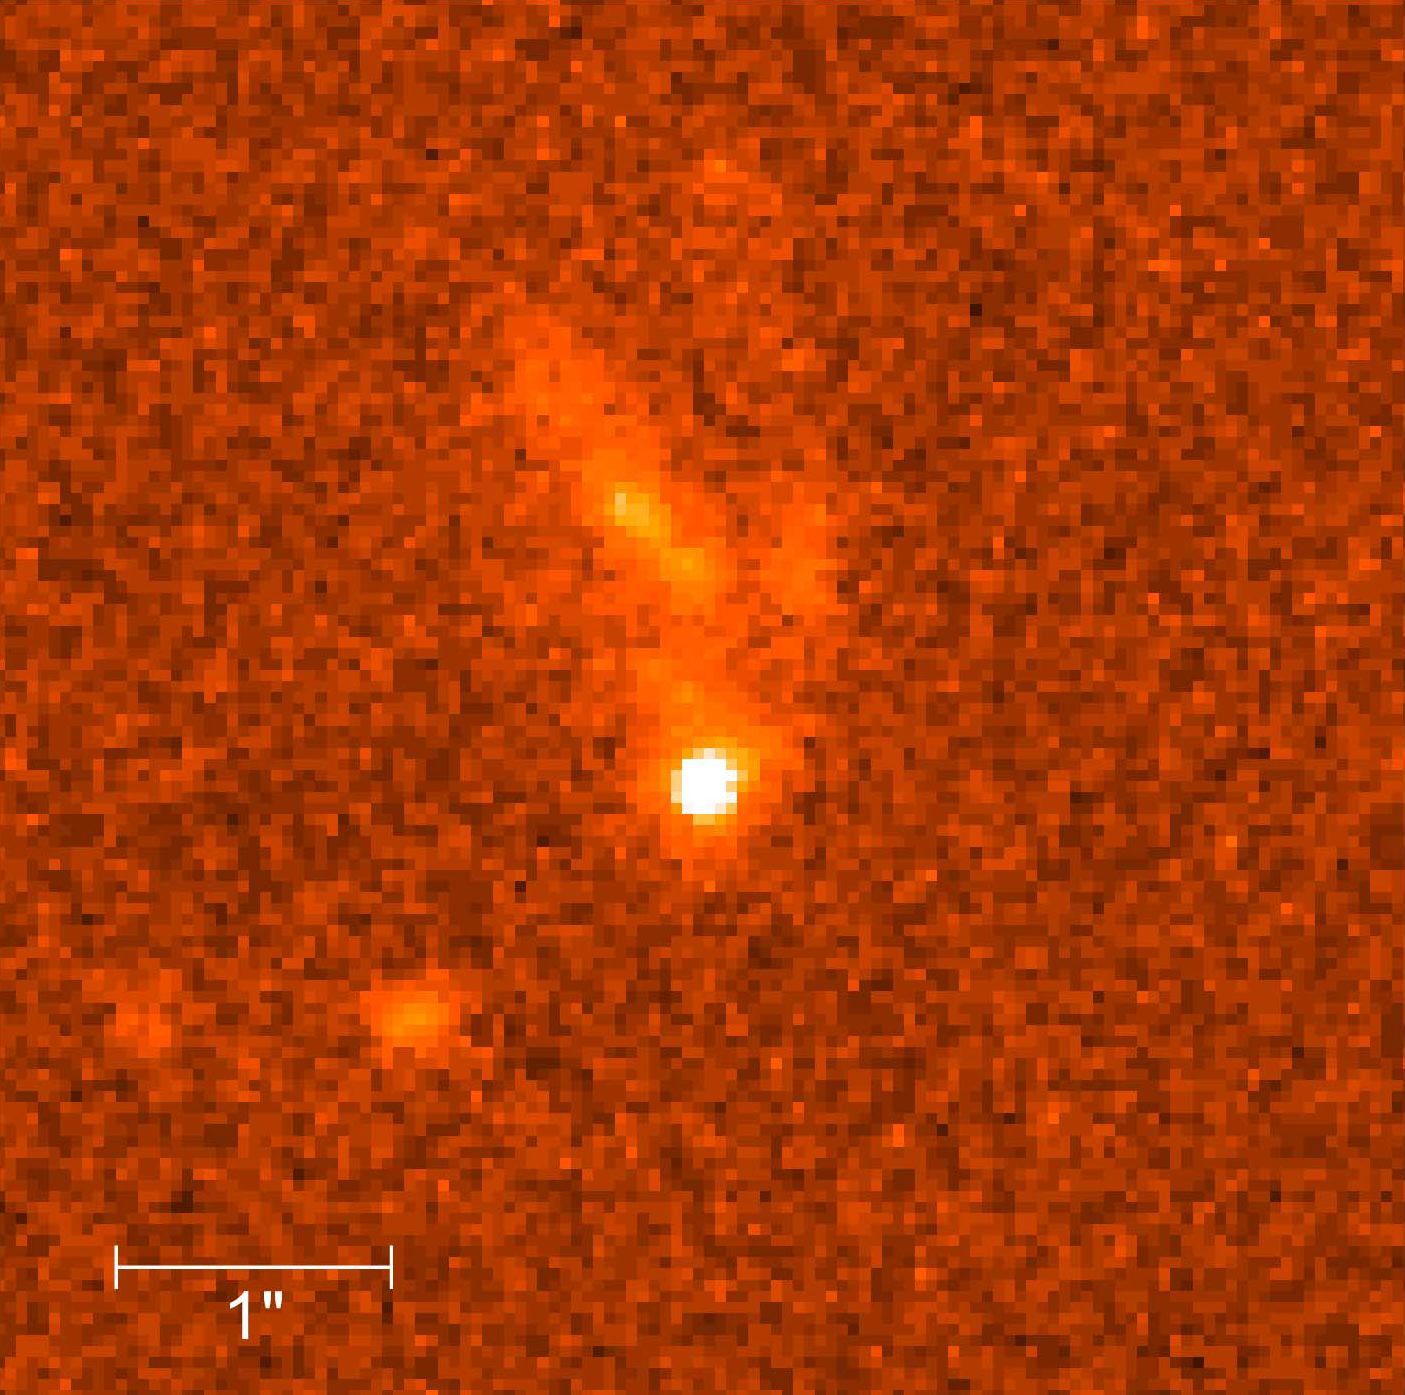 صورة التقطها تلسكوب هابل في 8 فبراير 1999 تكشف بقايا أشخم انفجار كوني تم اكتشافه حتى ذلك الحين- 11 مارس 1999 - AFP